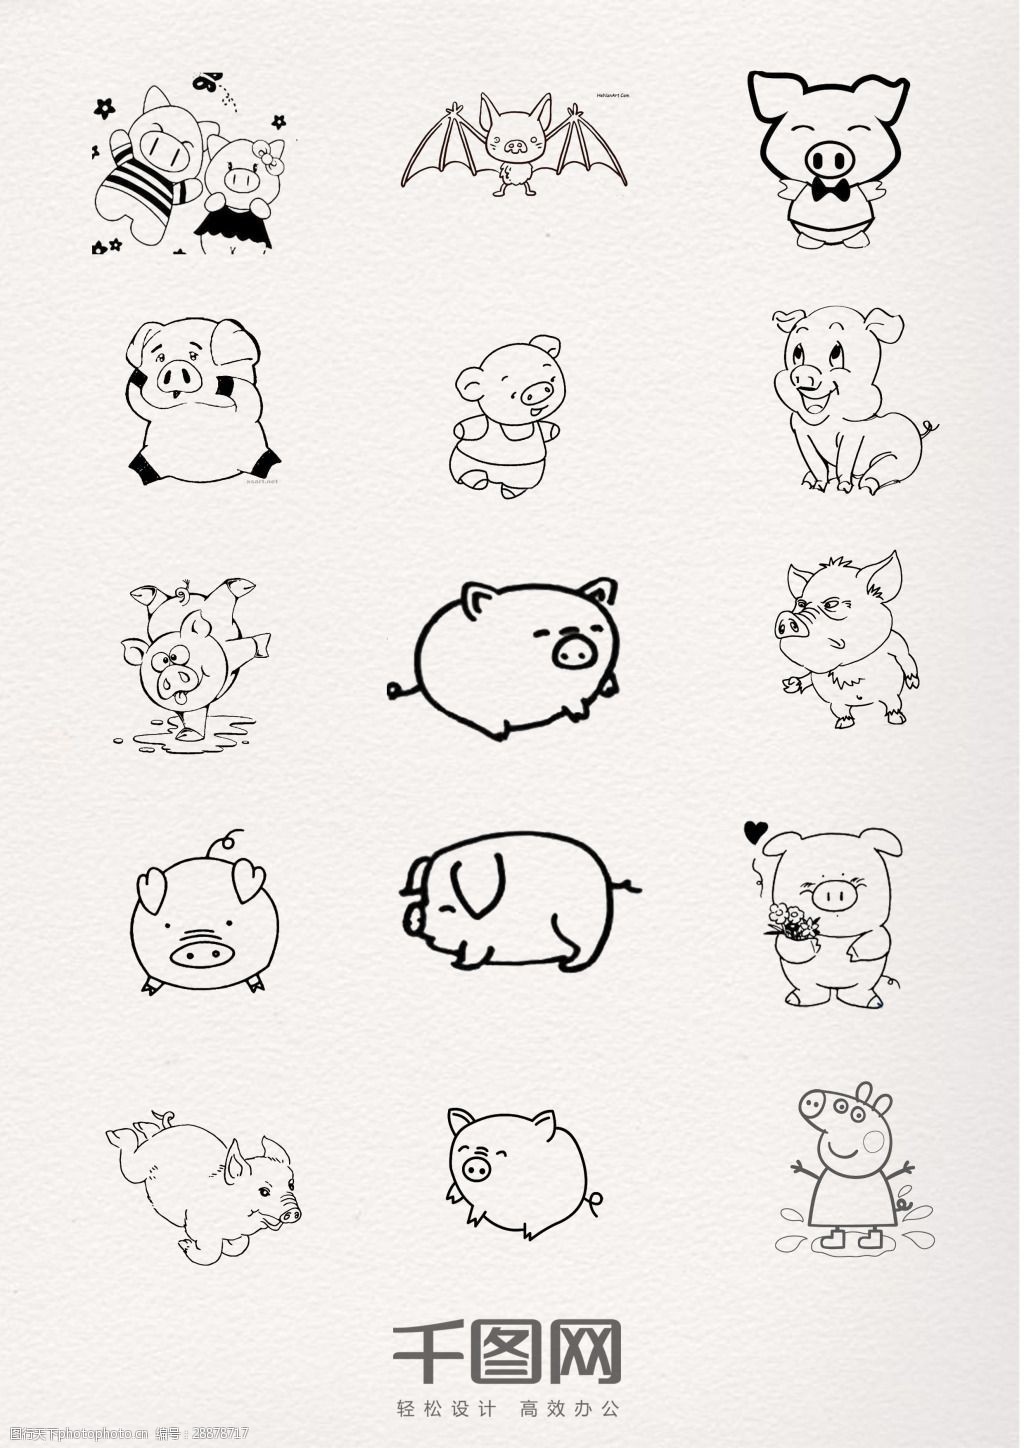 关键词:可爱黑色线条猪猪简笔画 动物 猪猪 铅笔 钢笔 黑白 线条 简约